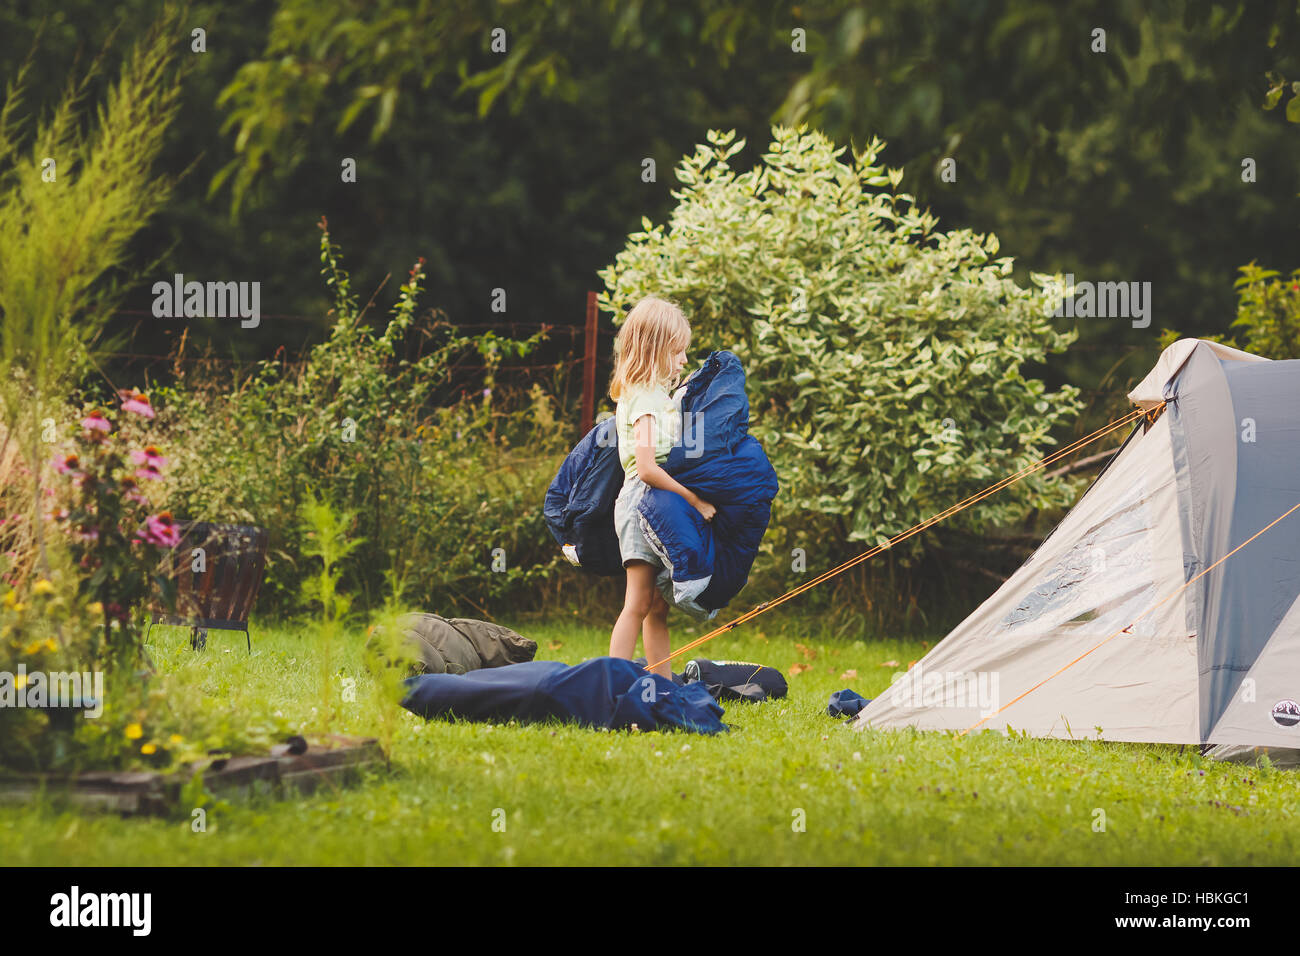 Ragazza giovane la preparazione di tenda per campeggio Foto Stock